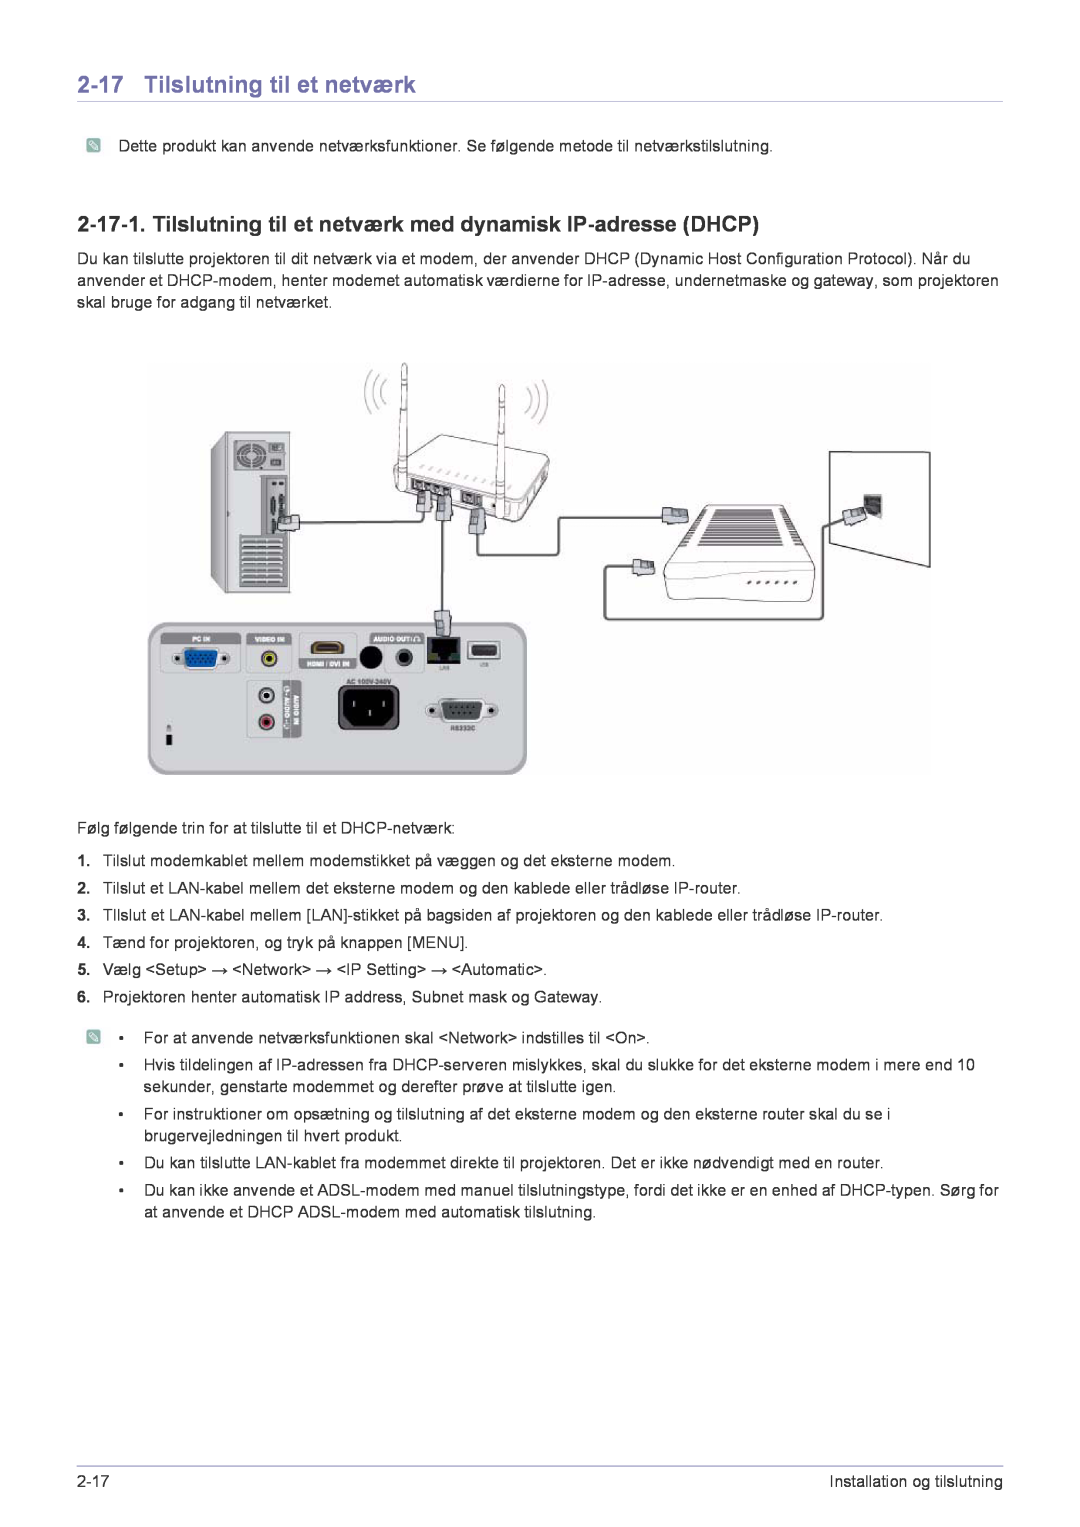 Samsung SP2553XWCX/EN manual Tilslutning til et netværk med dynamisk IP-adresse DHCP 